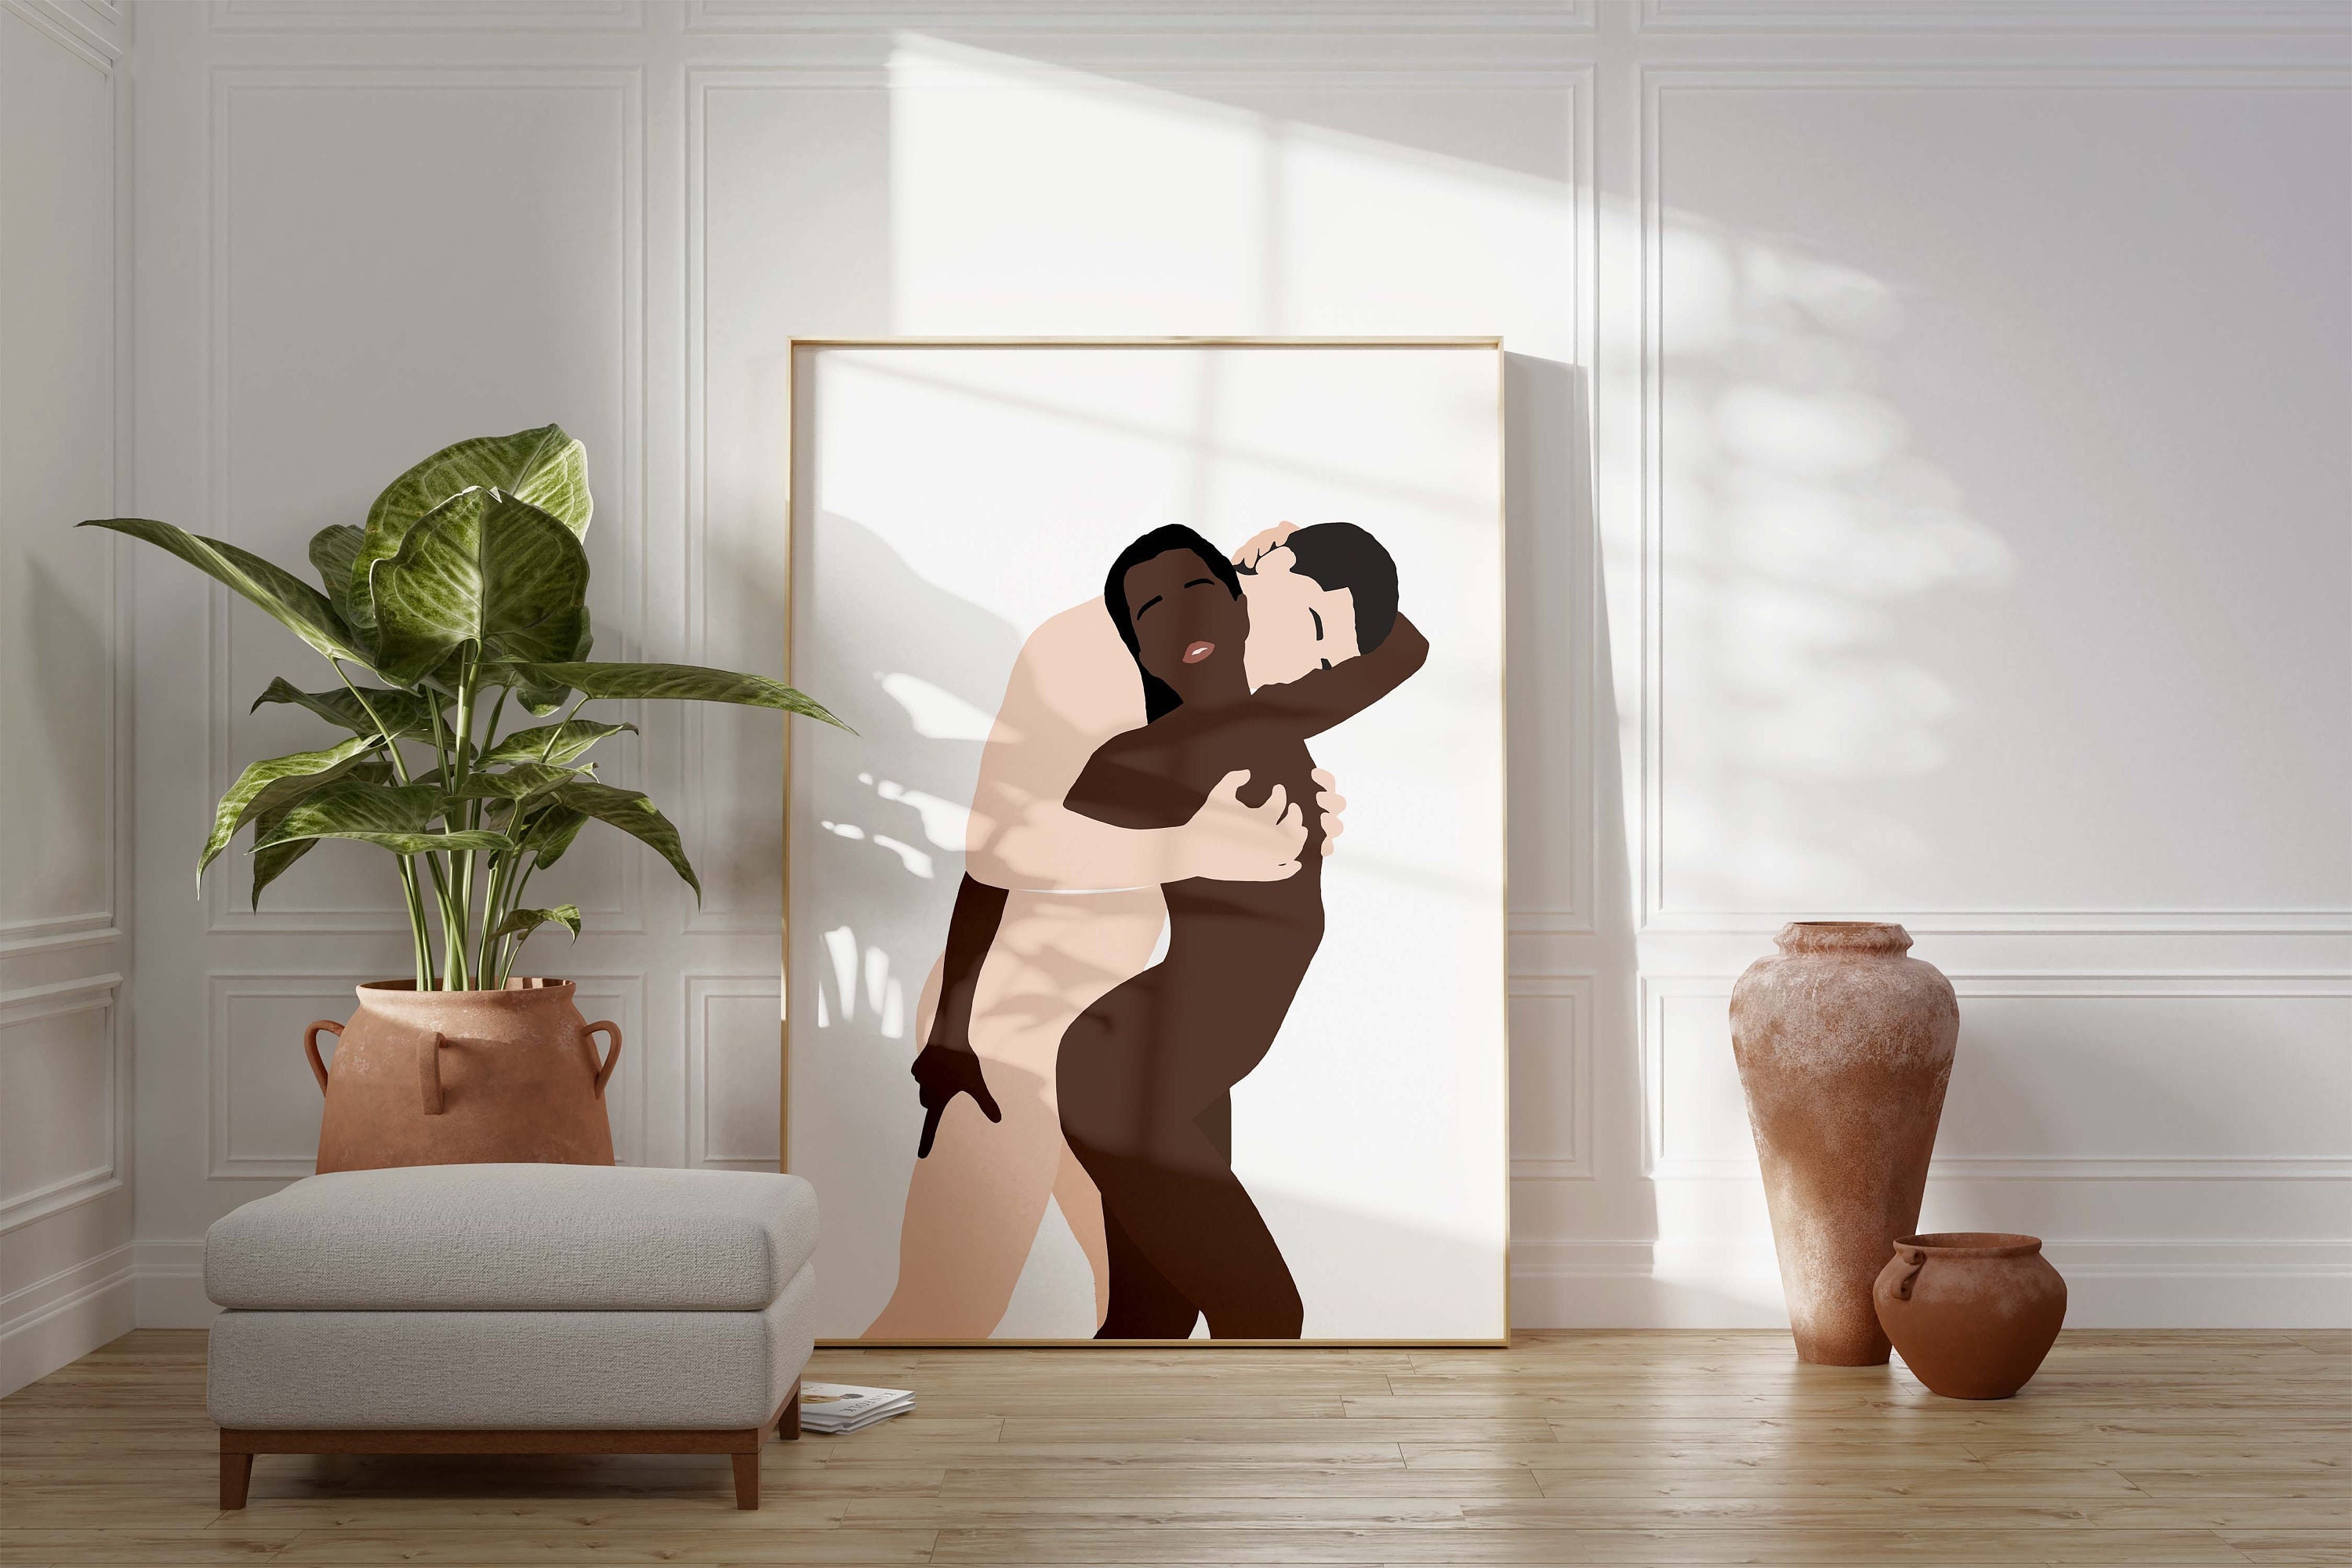 Interracial Nude Art - Nude Interracial Art - Etsy Finland